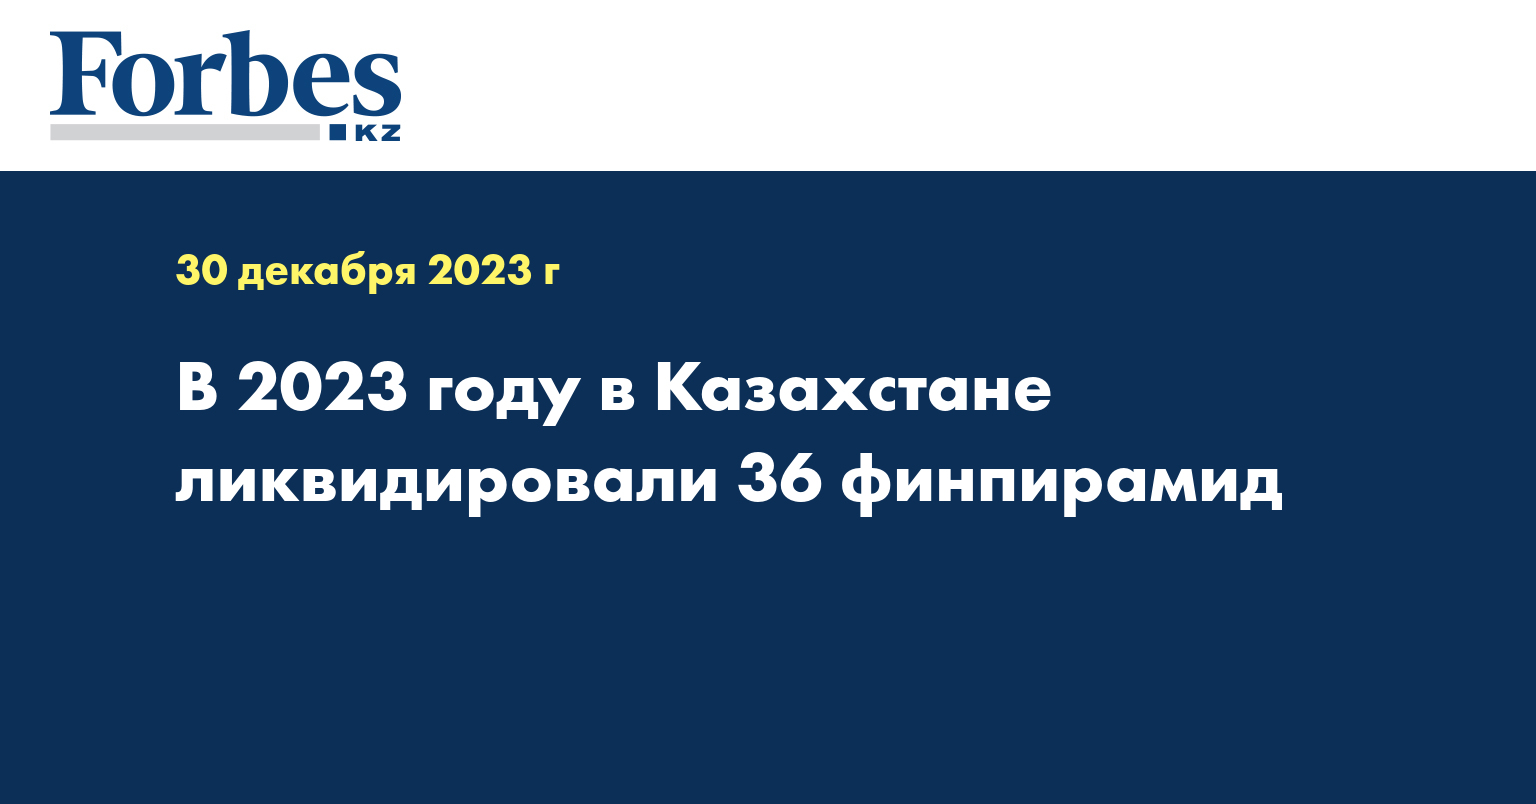 В 2023 году в Казахстане ликвидировали 36 финпирамид